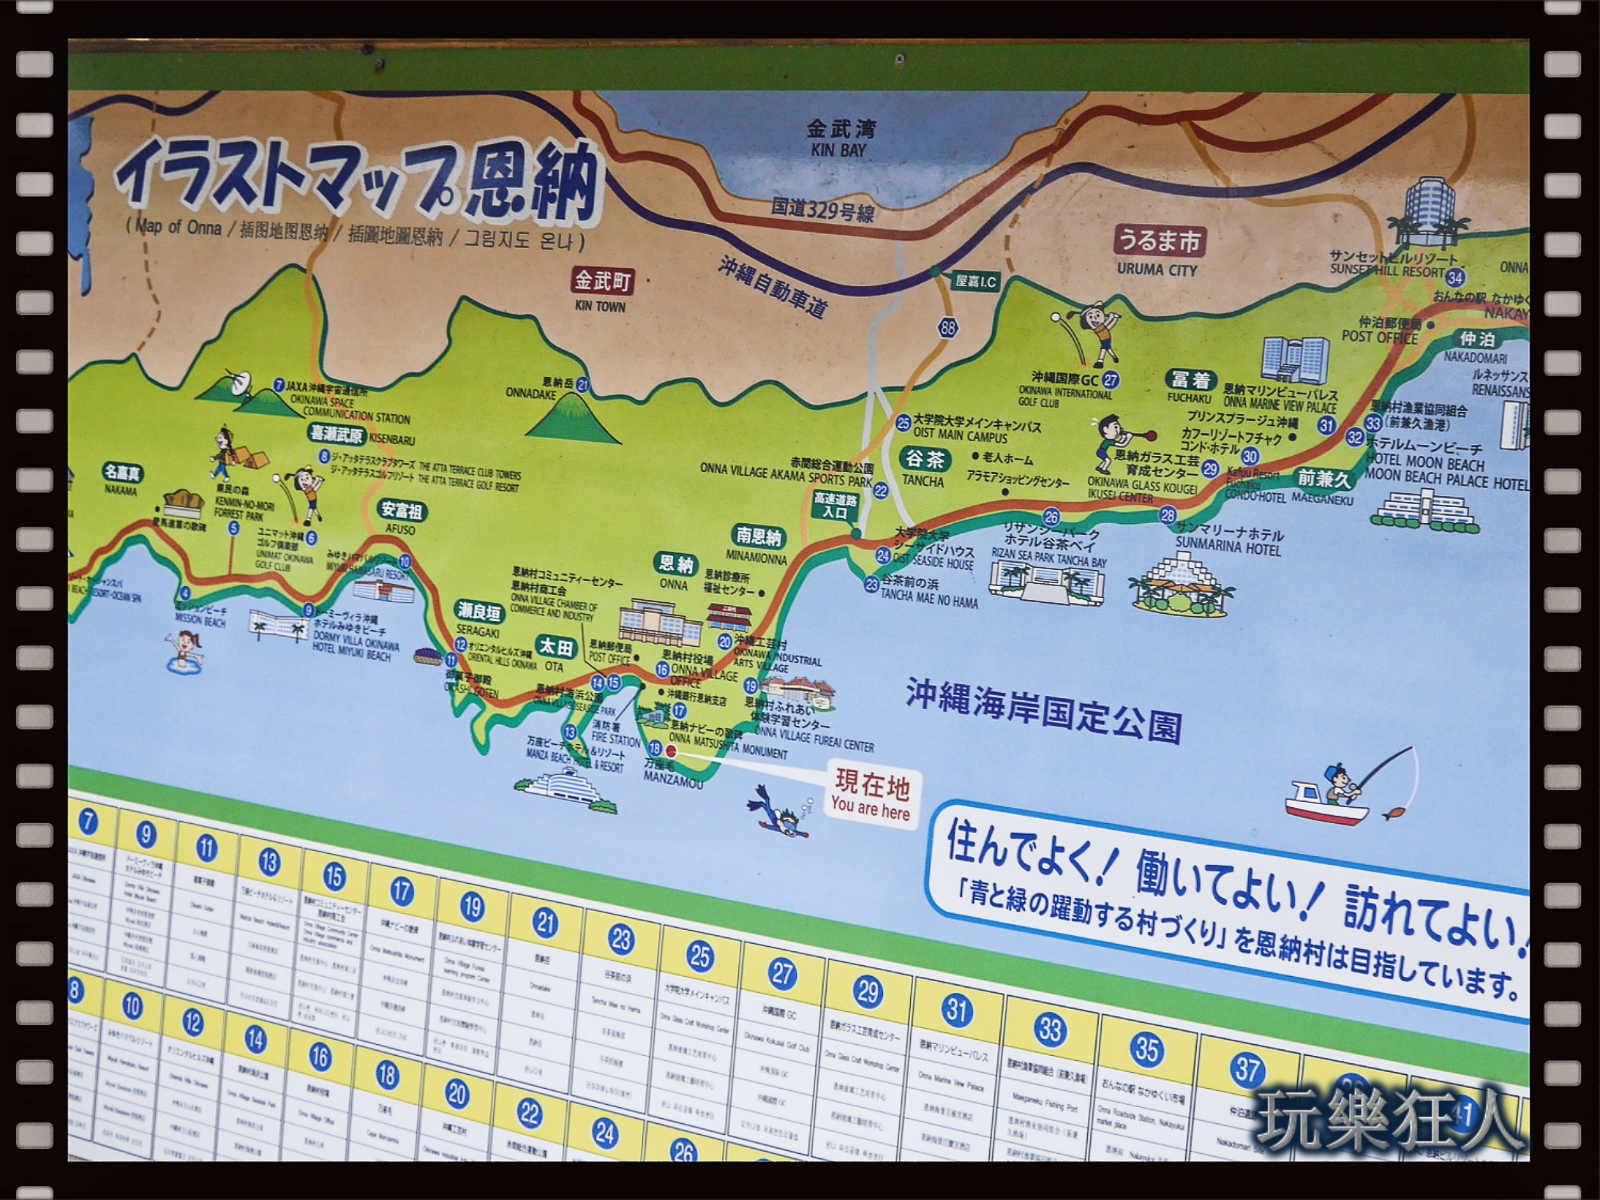 『萬座毛』沖繩海岸國定公園地圖